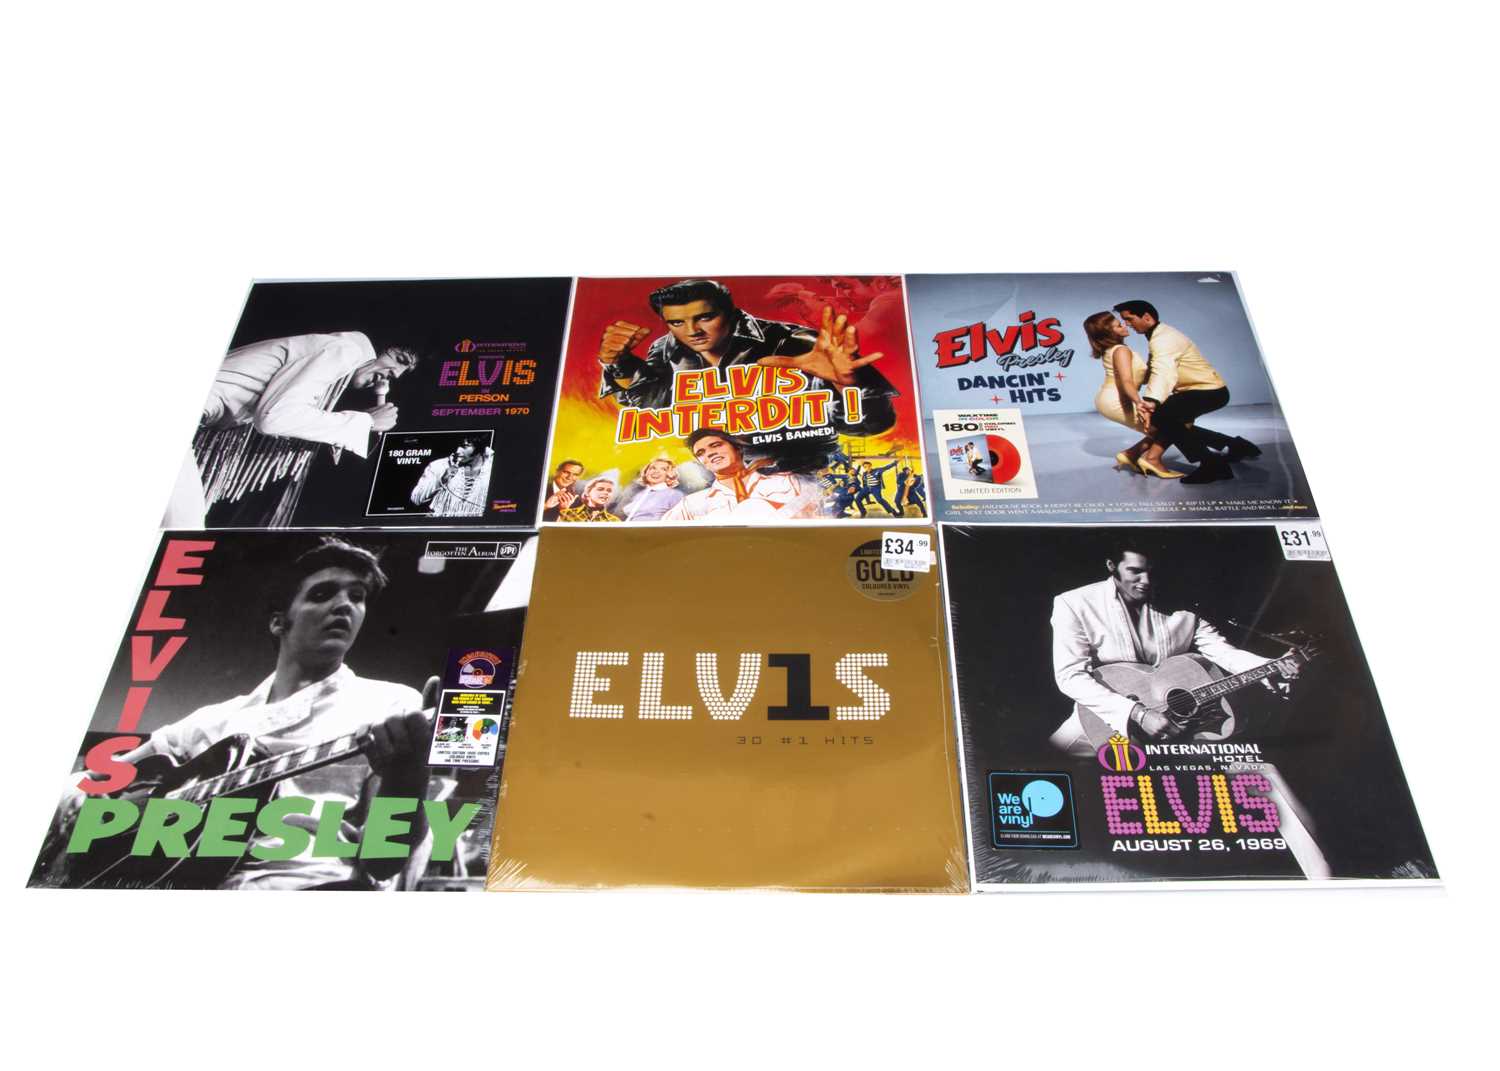 Lot 127 - Elvis Presley LPs